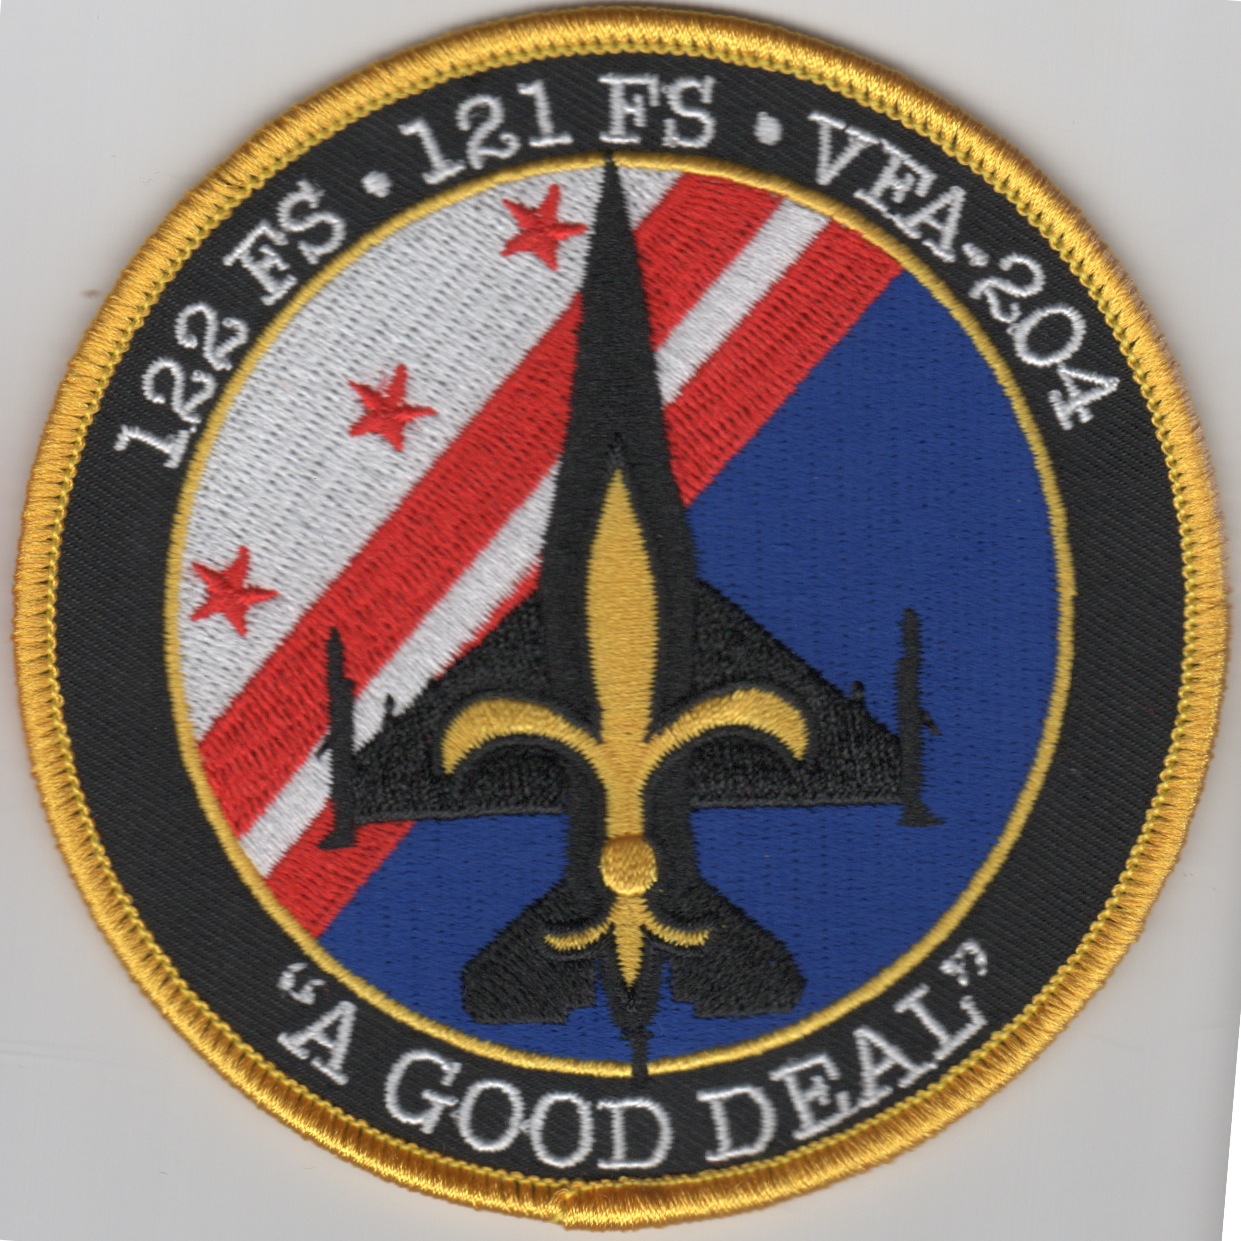 121FS/VFA-204 'Good Deal' Det Patch